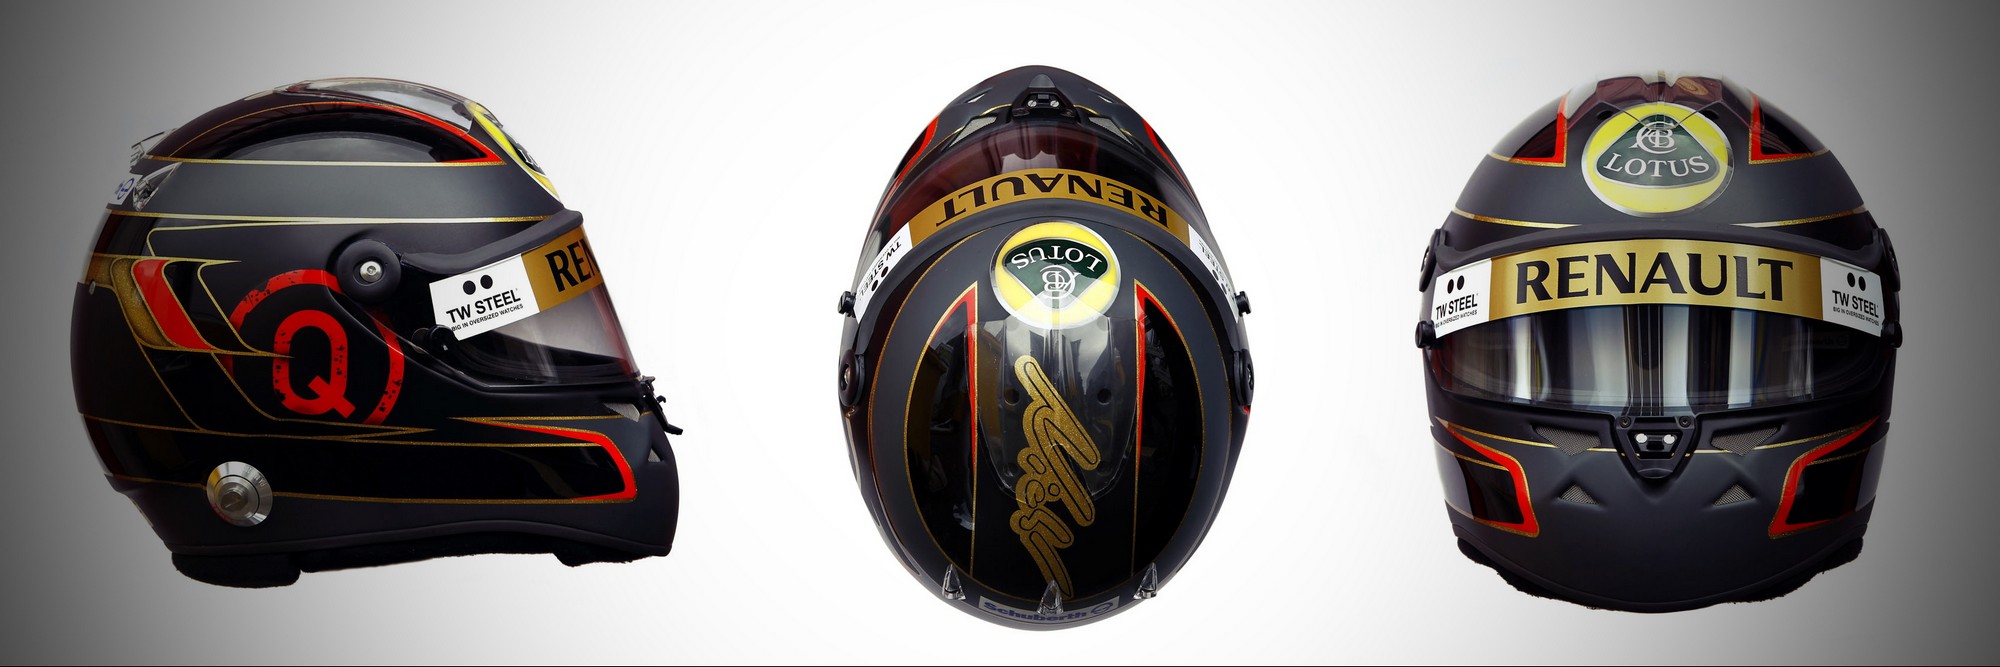 Шлем Ника Хайдфельда на сезон 2011 года | 2011 helmet of Nick Heidfeld